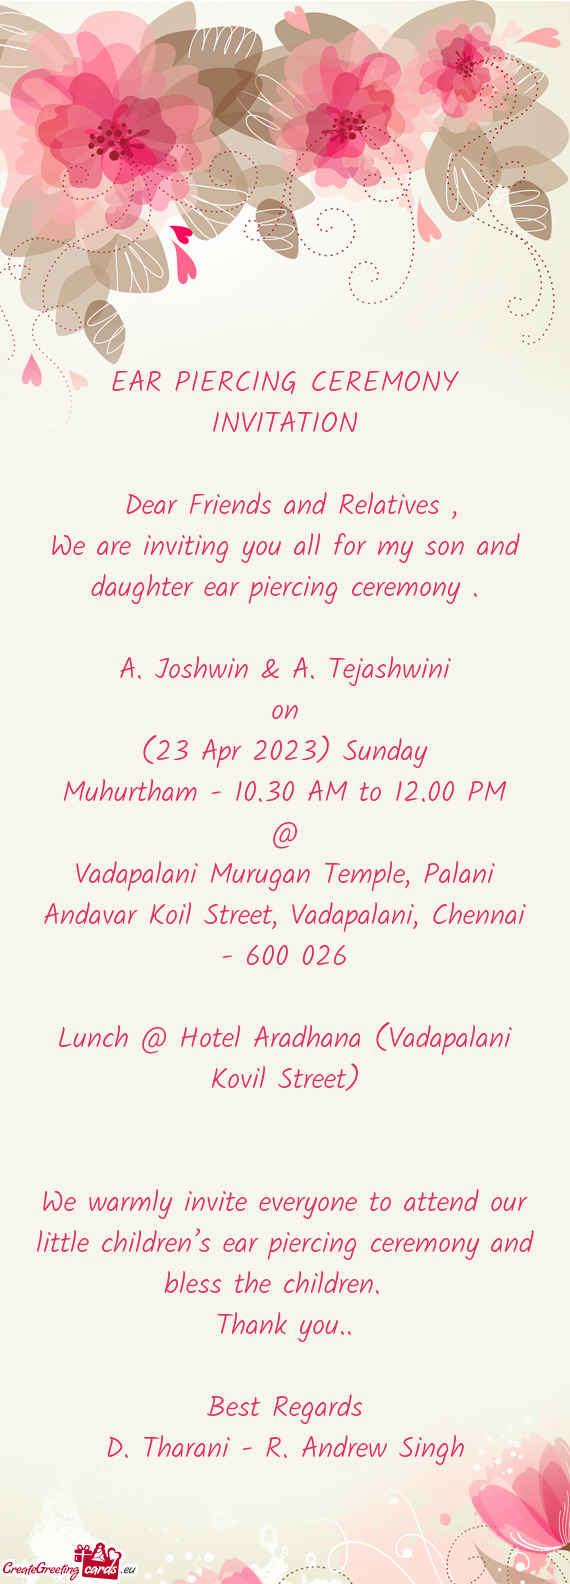 Vadapalani Murugan Temple, Palani Andavar Koil Street, Vadapalani, Chennai - 600 026